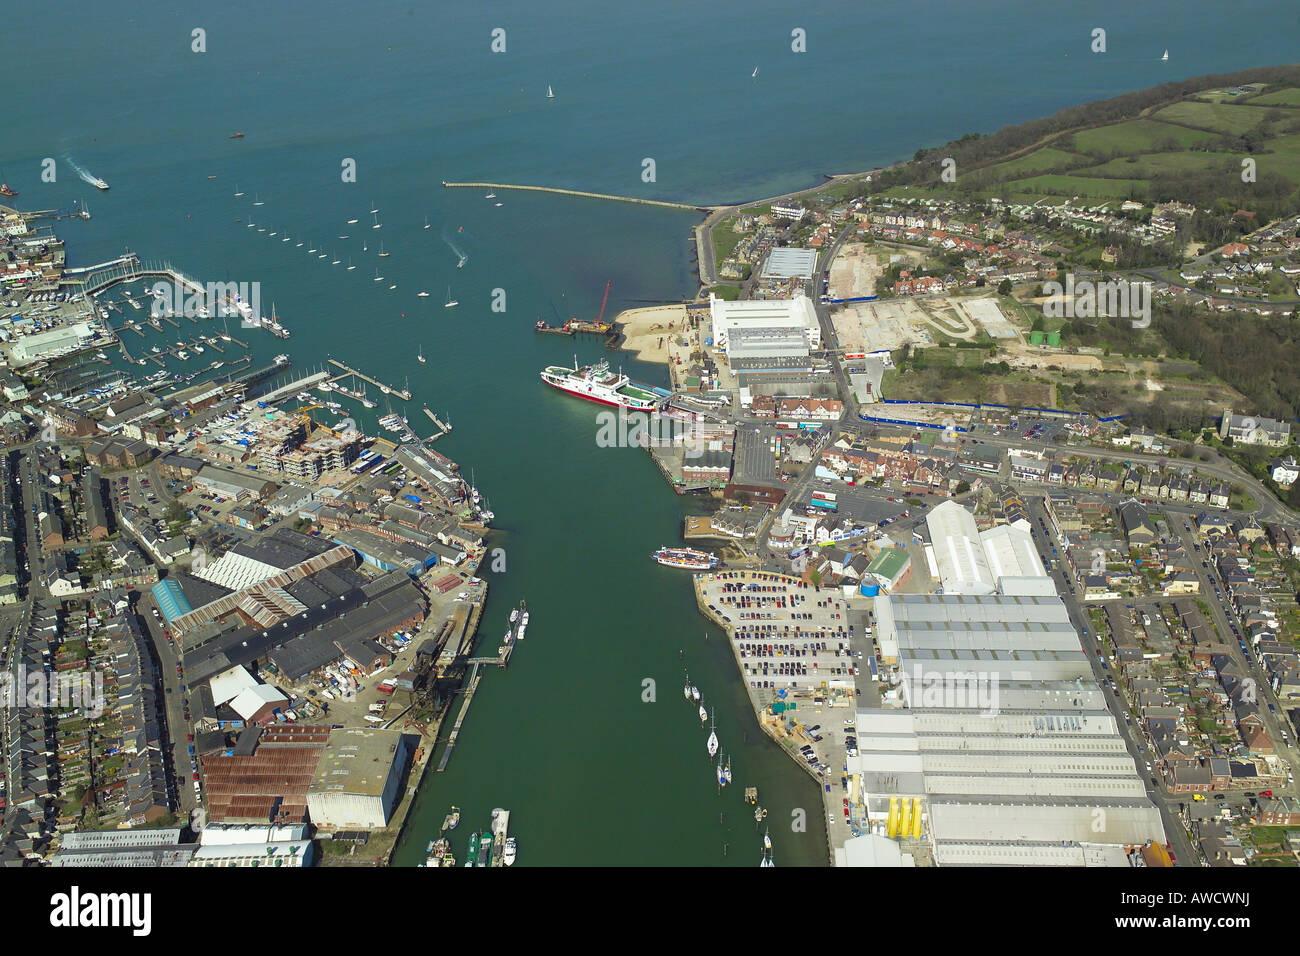 Vista aérea de Cowes & East Cowes en la Isla de Wight con la terminal del ferry, los astilleros y el puente flotante Foto de stock